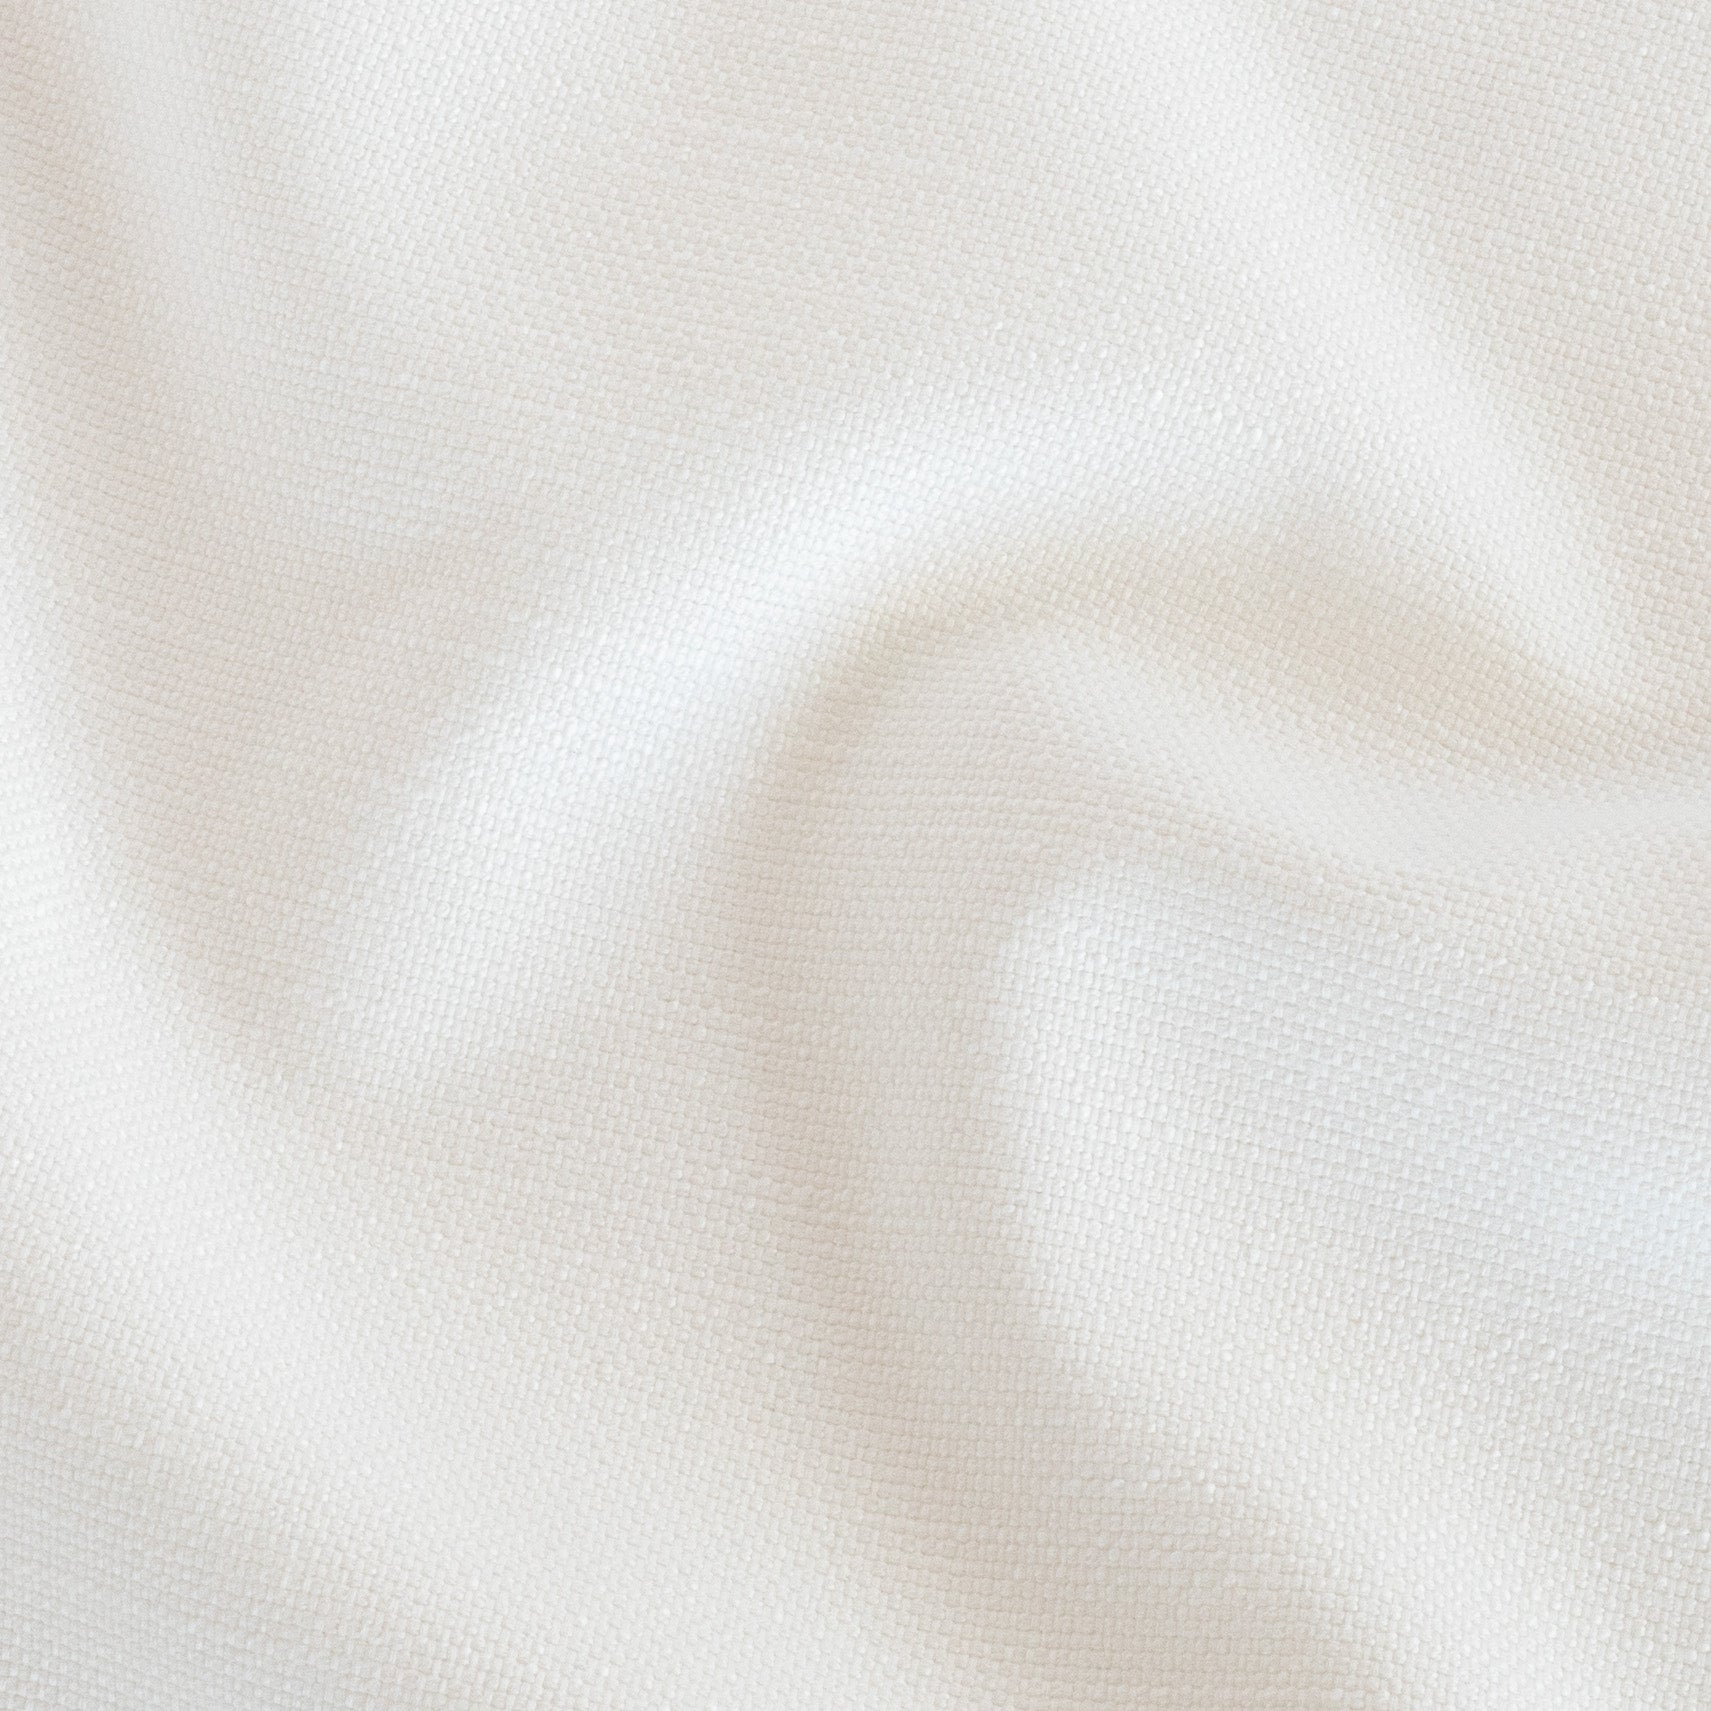 Eden White indoor outdoor fabric : view 4